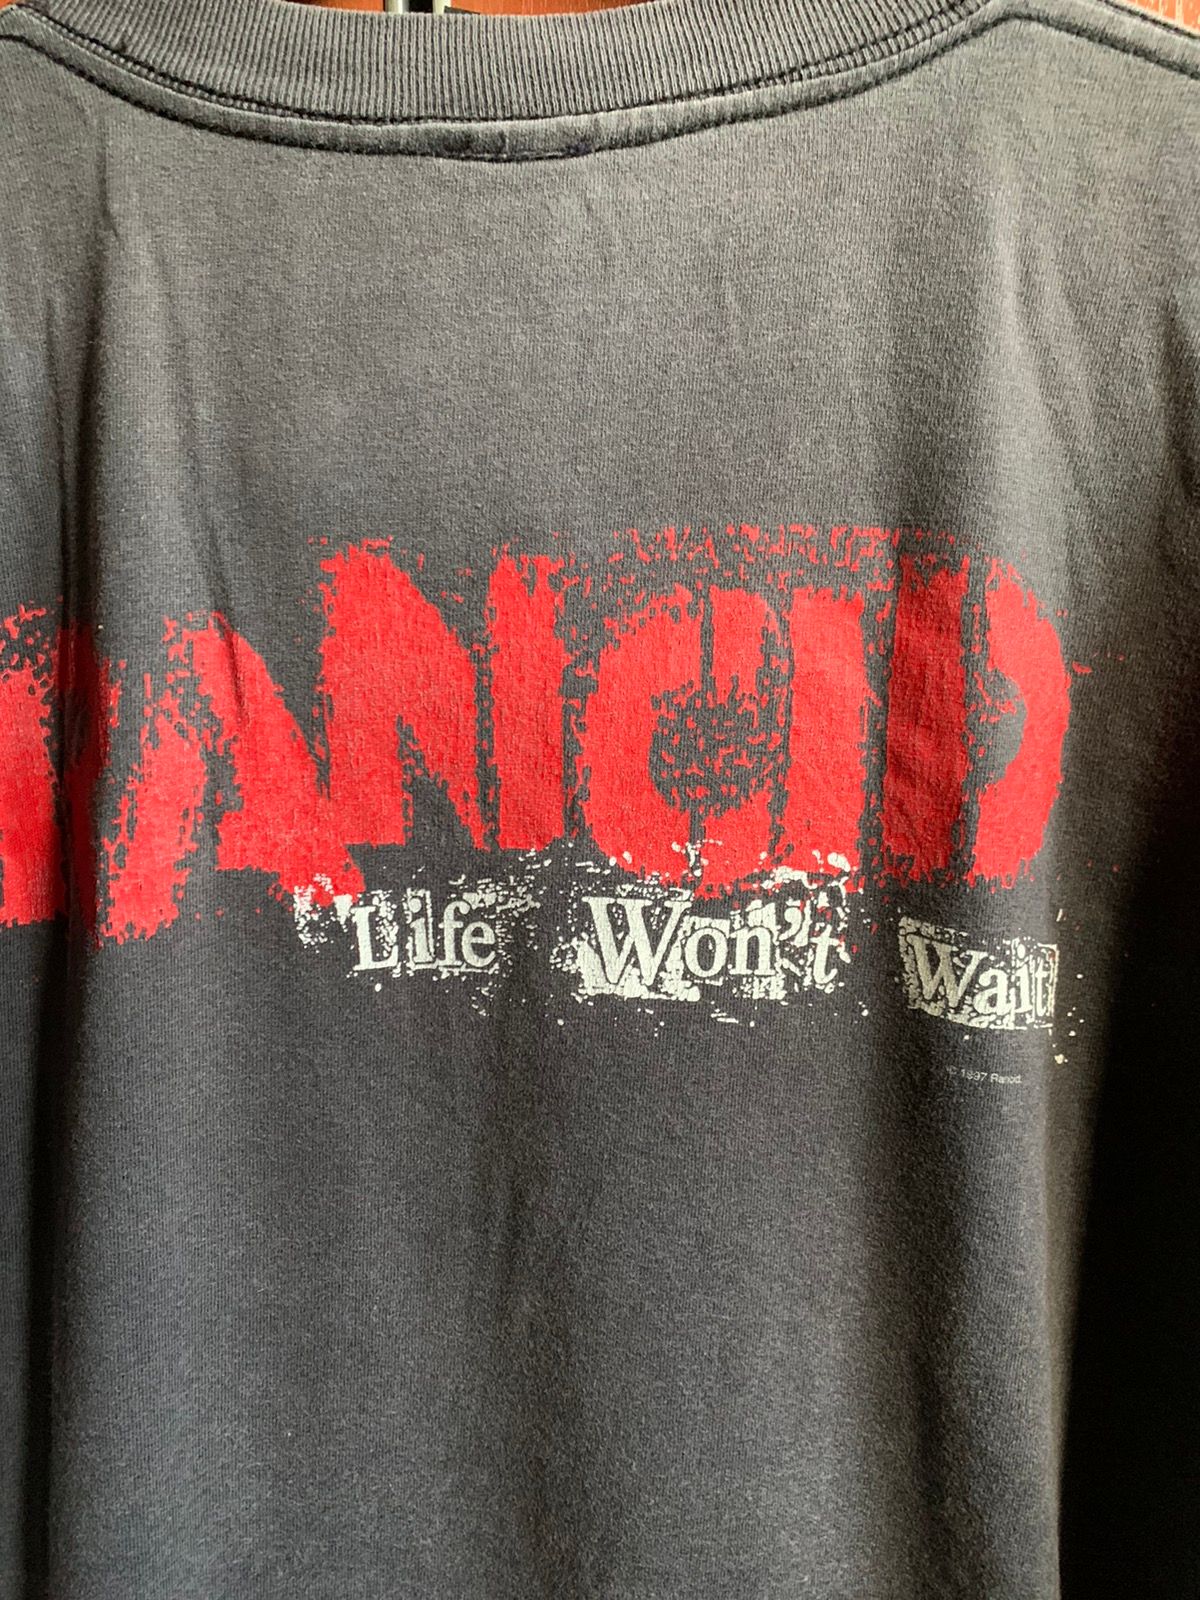 vintage 90’s Band RANCID(punk)t-shirt - 4